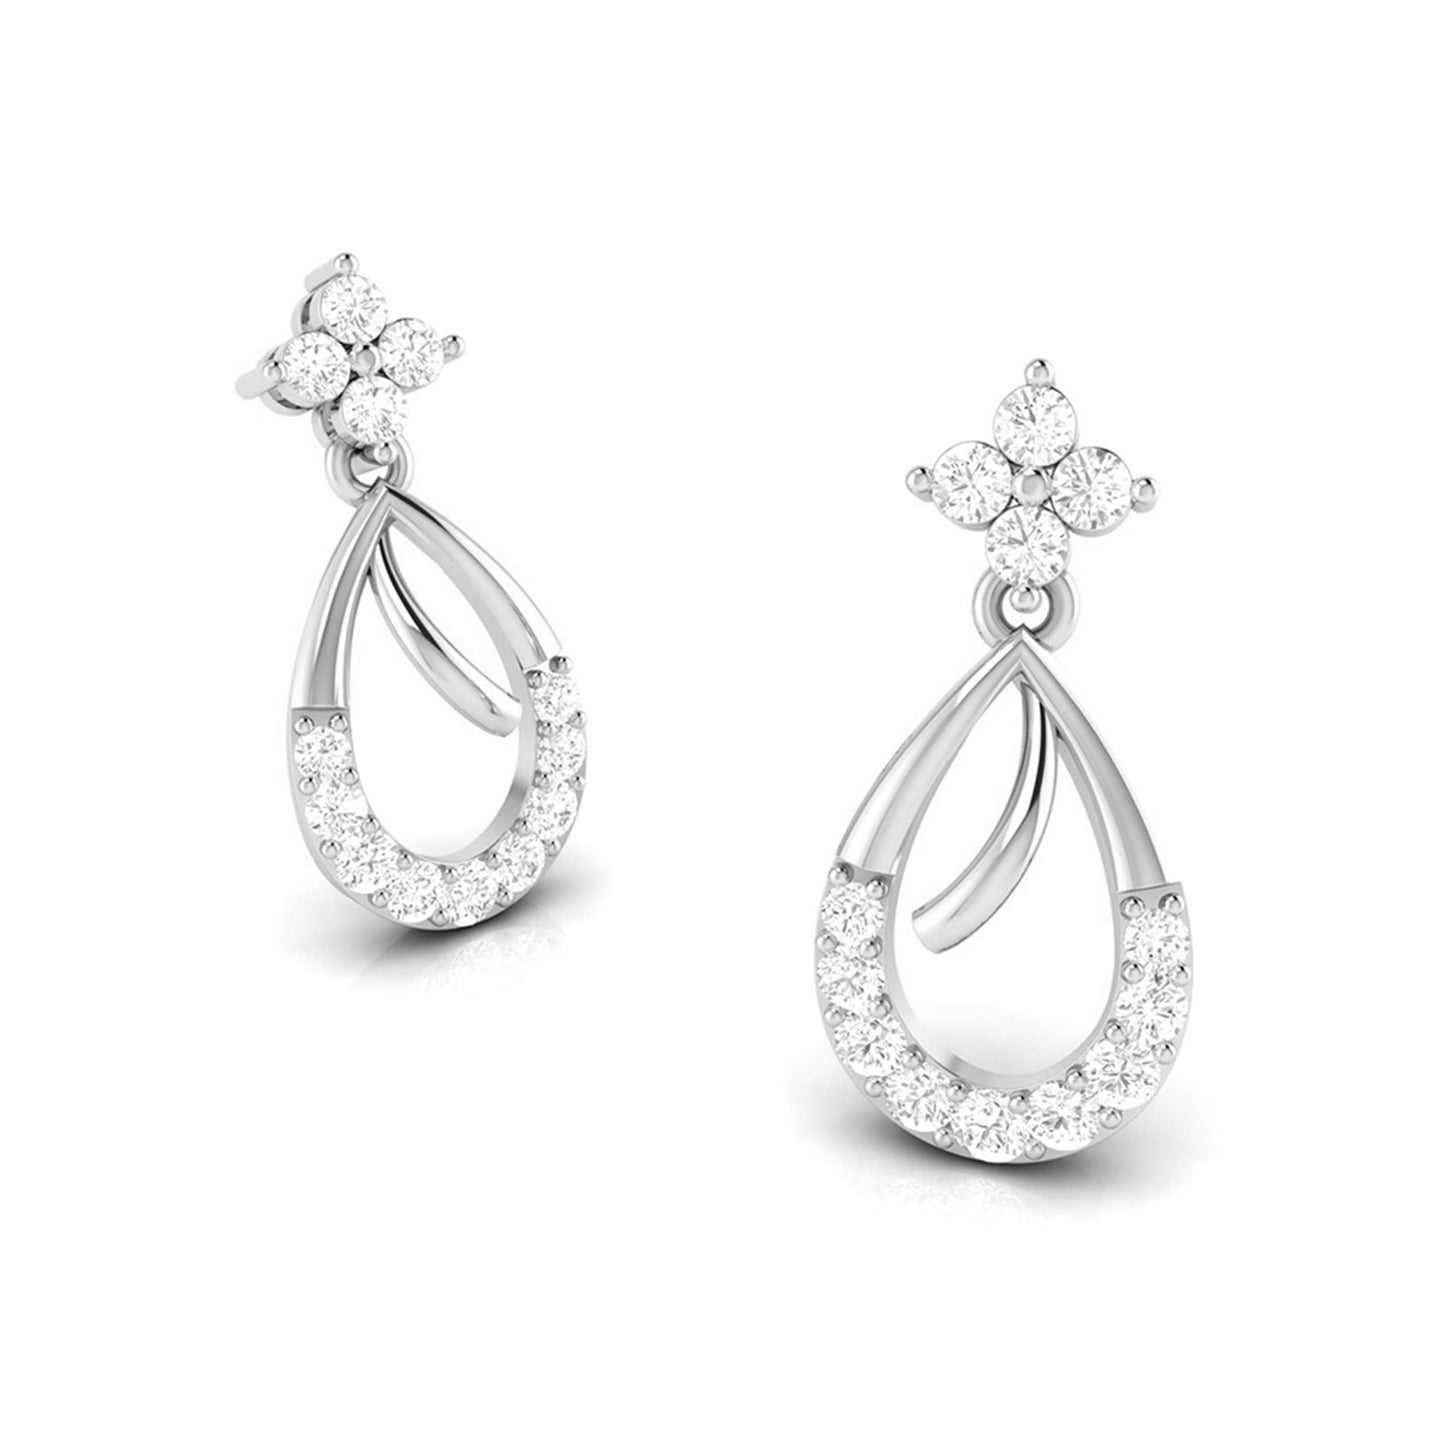 Fancy earrings design Conjecture Lab Grown Diamond Earrings Fiona Diamonds